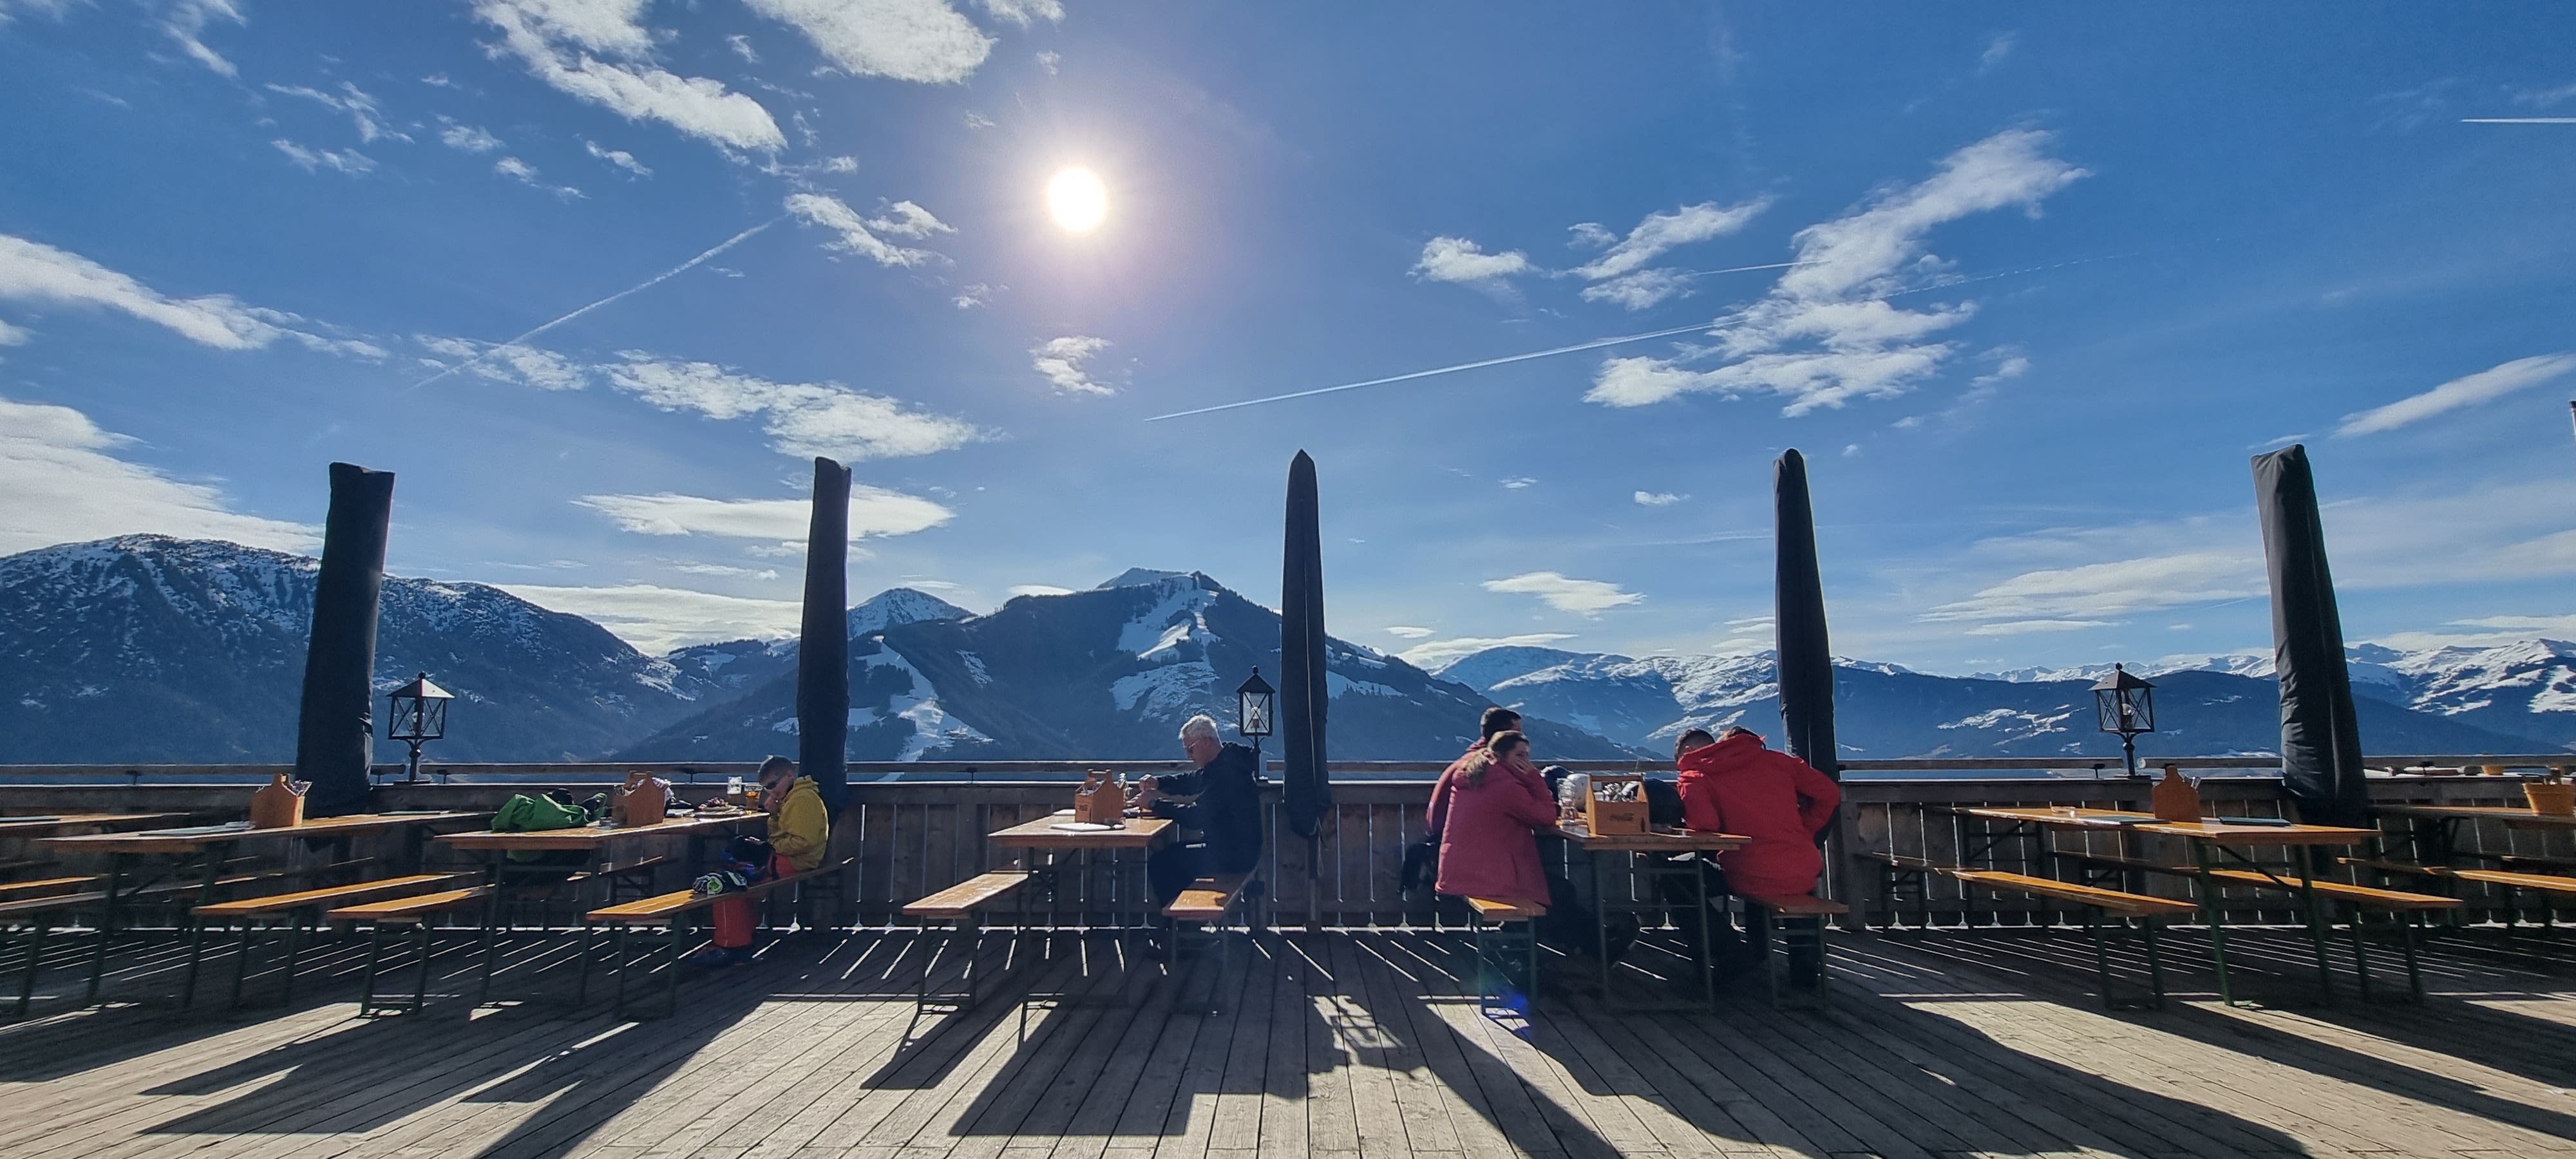 Zeker donderdag en vrijdag kan het mooi terrasweer zijn (foto: Berggasthof Nieding)